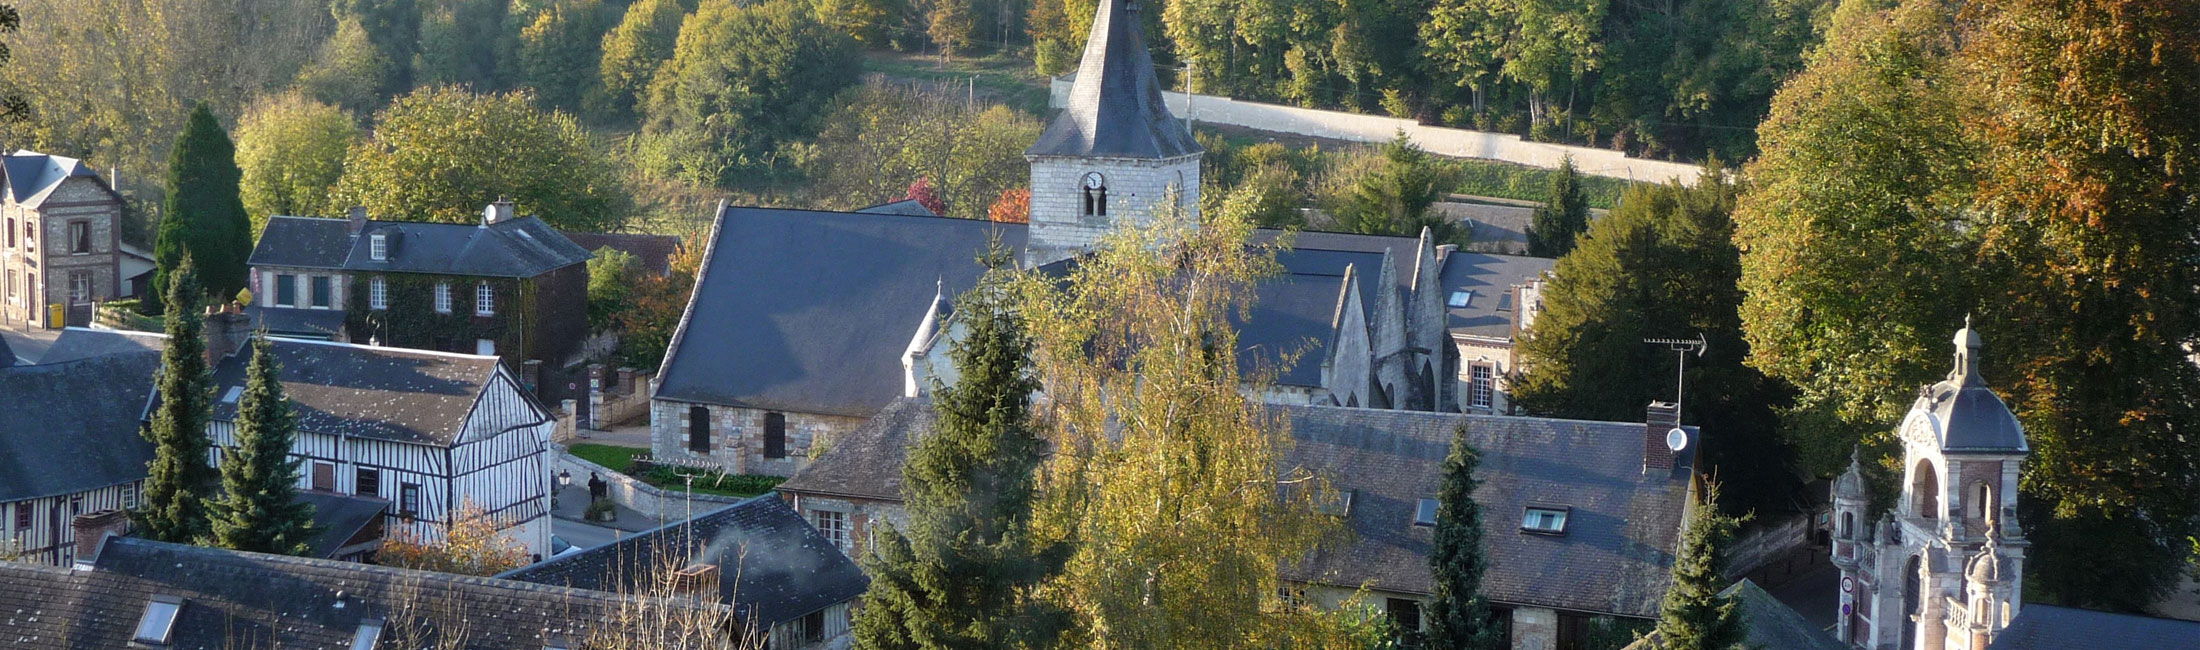 Villequier, Caudebec-en-Caux et Saint-Wandrille-Rançon réunies